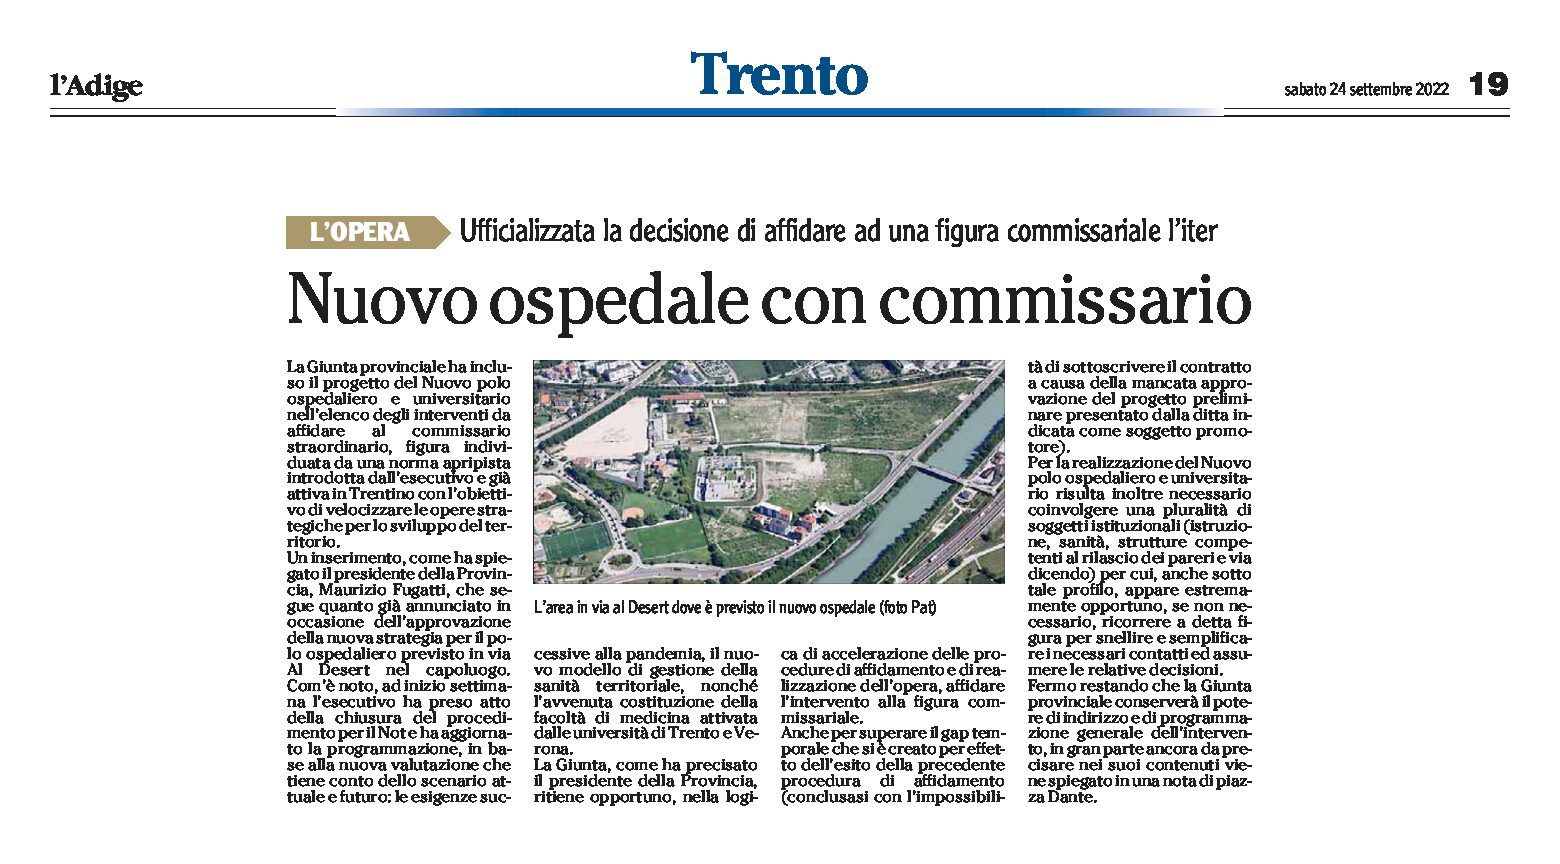 Trento: nuovo ospedale con commissario